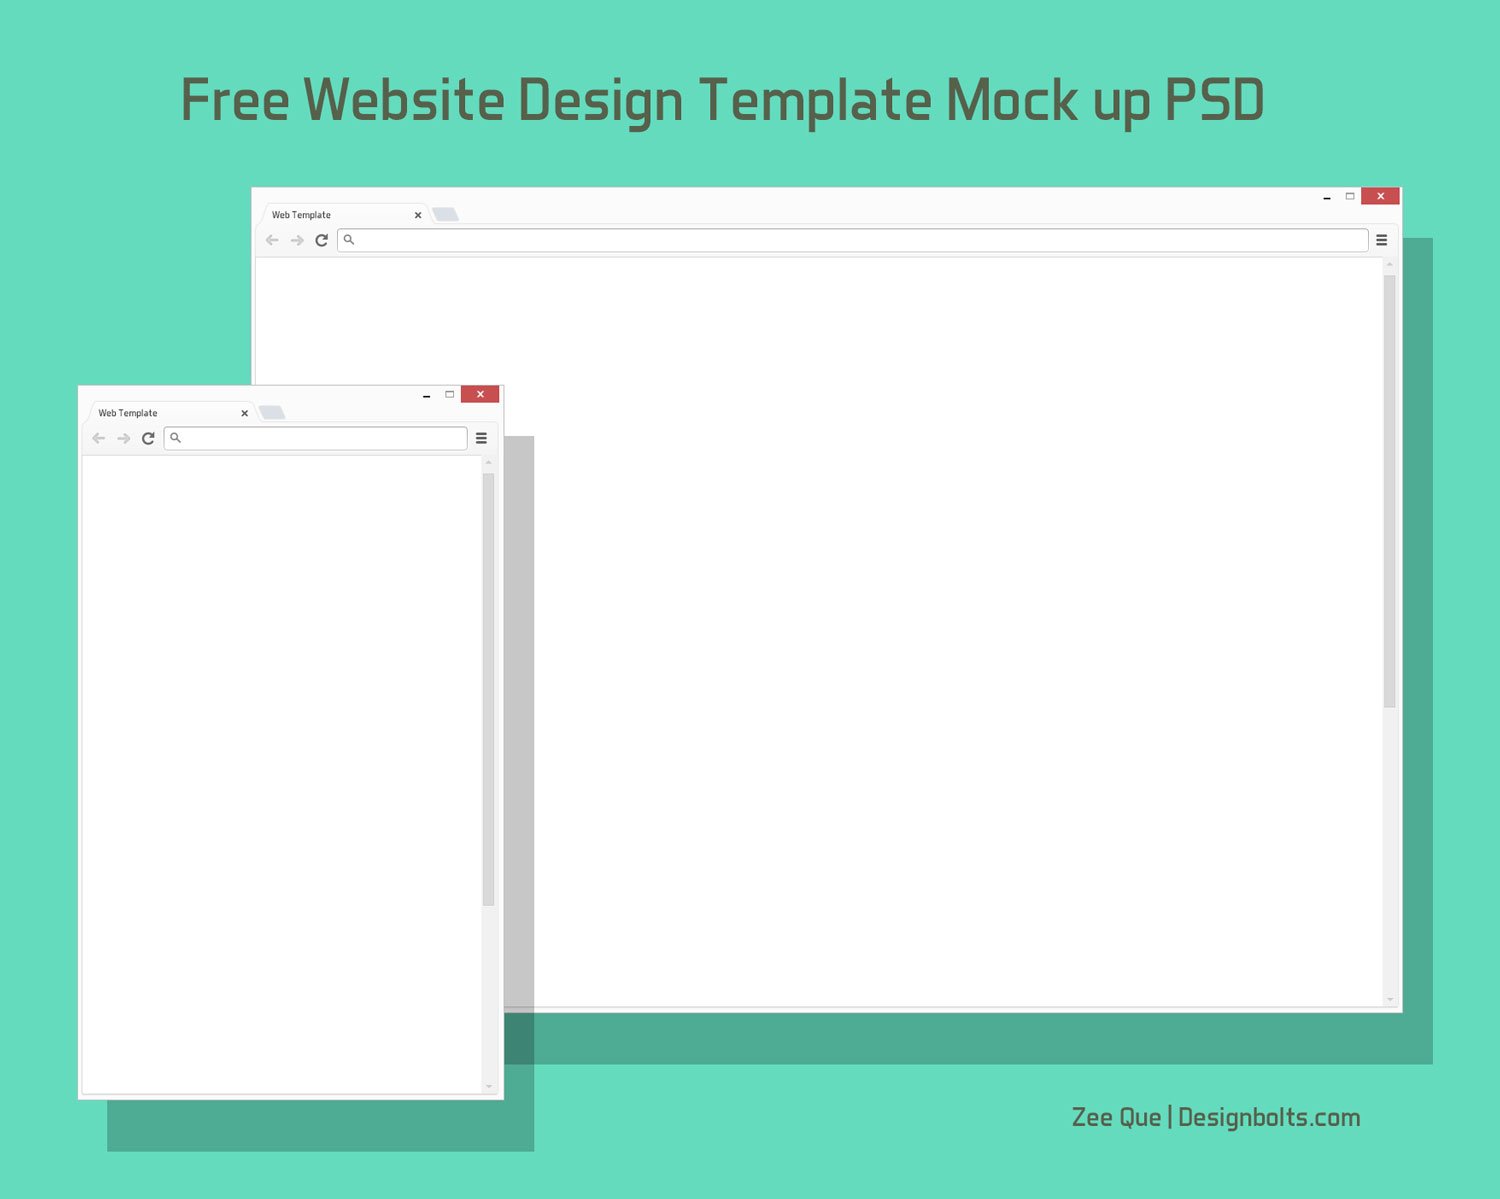 Free Browser / Website Design Template Mock up PSD